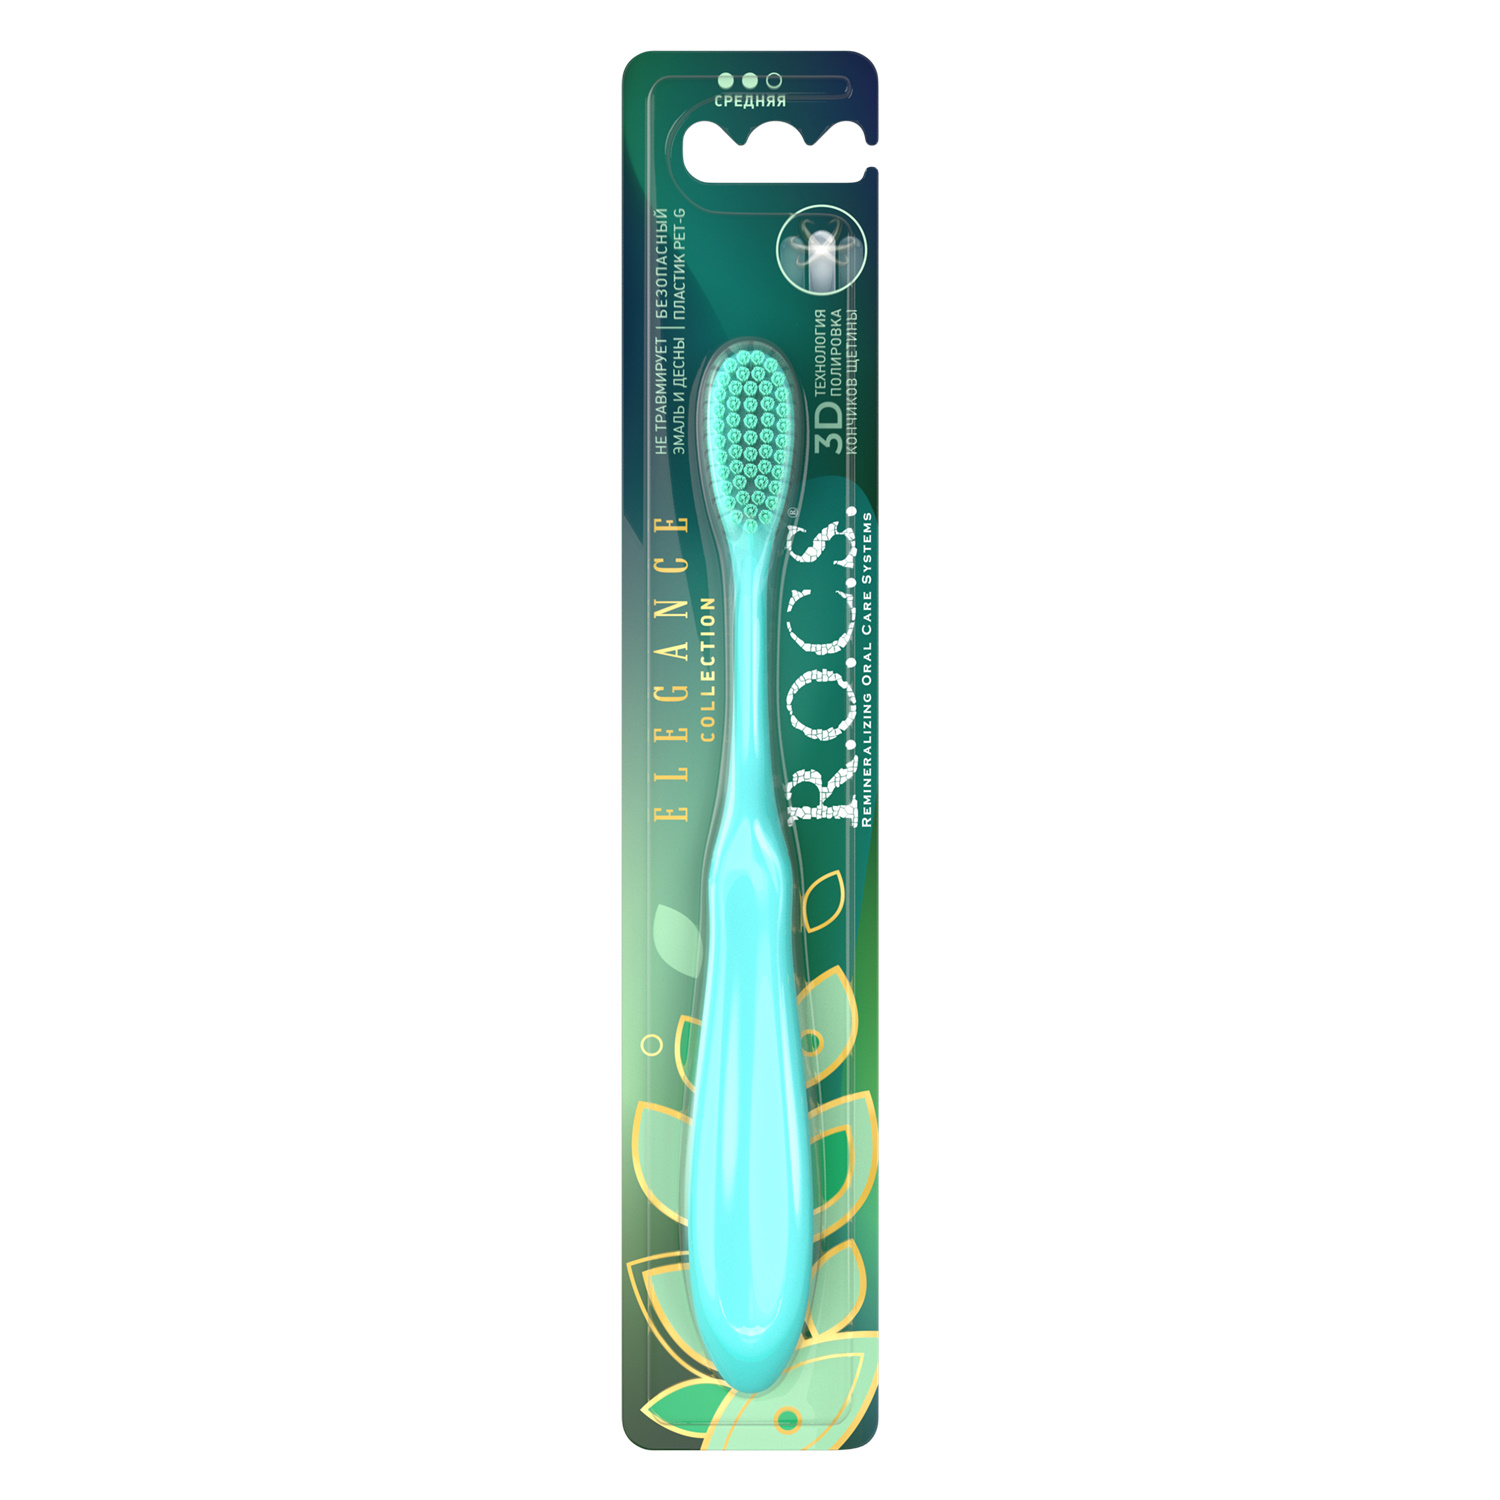 Зубная щетка R.O.C.S. Elegance средняя цвет зеленый щетка с дозатором для моющего средства и подставкой зеленый